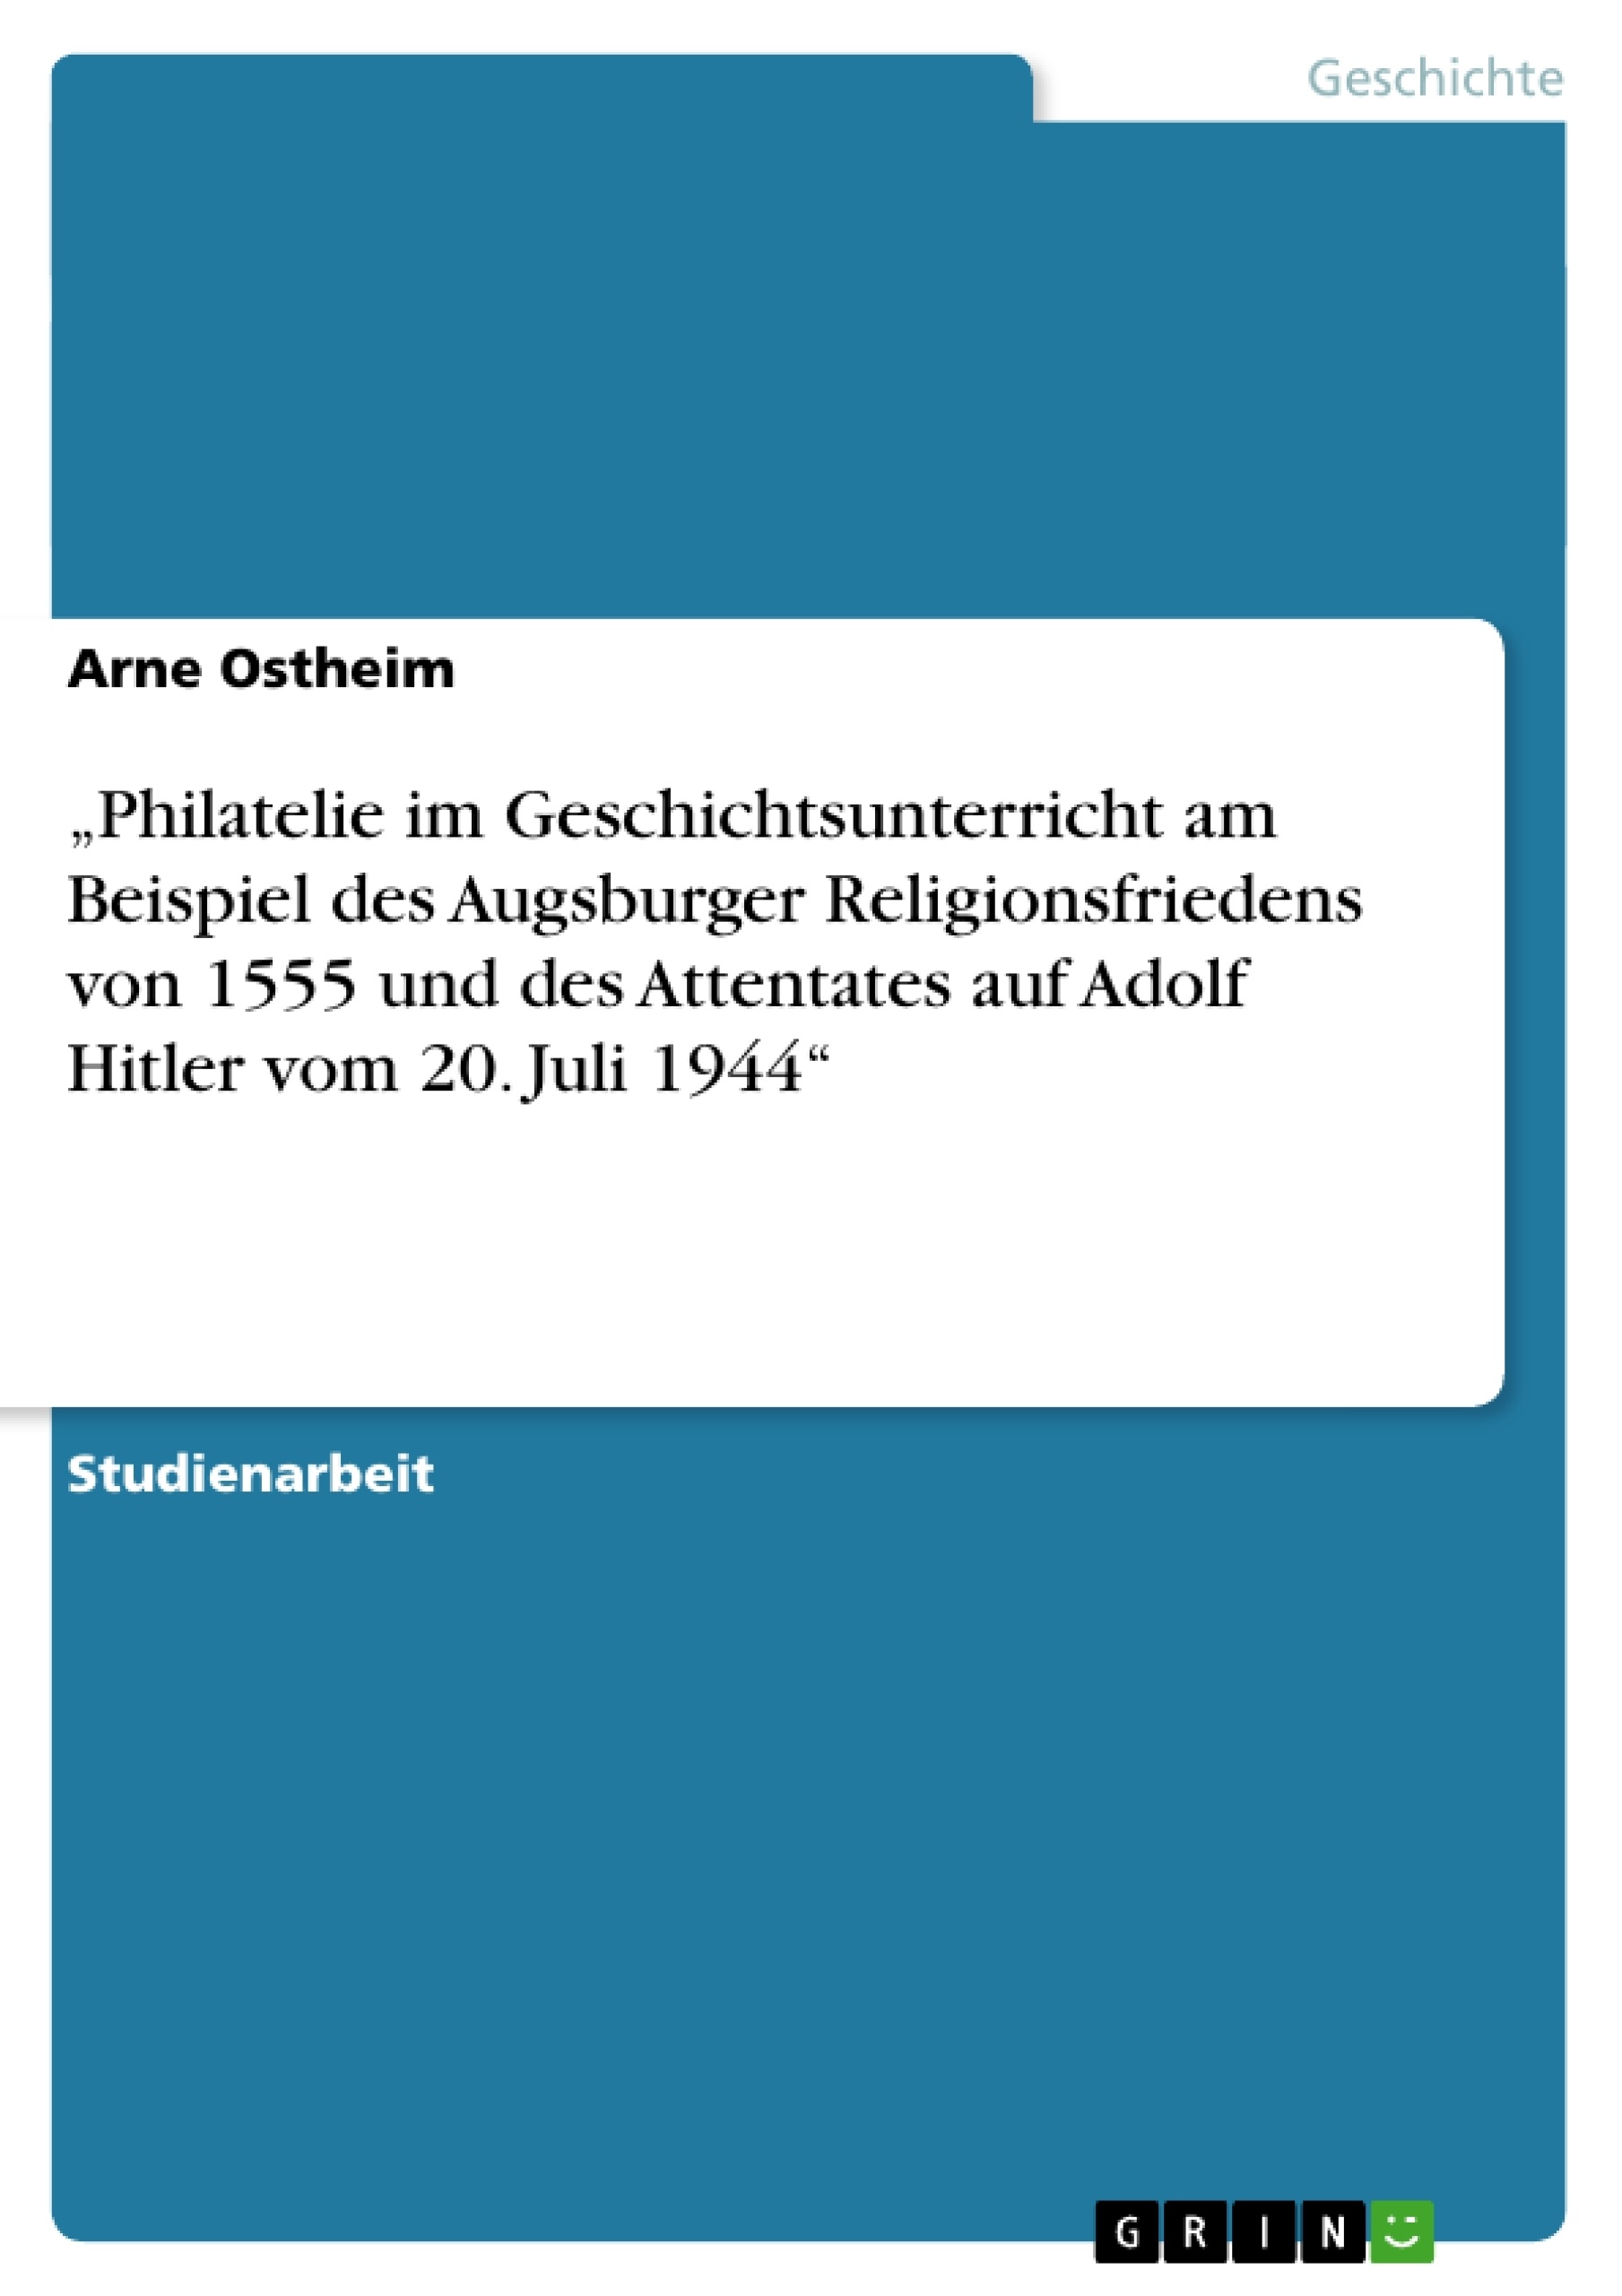 Titel: „Philatelie im Geschichtsunterricht am Beispiel des Augsburger Religionsfriedens von 1555 und des Attentates auf Adolf Hitler vom 20. Juli 1944“